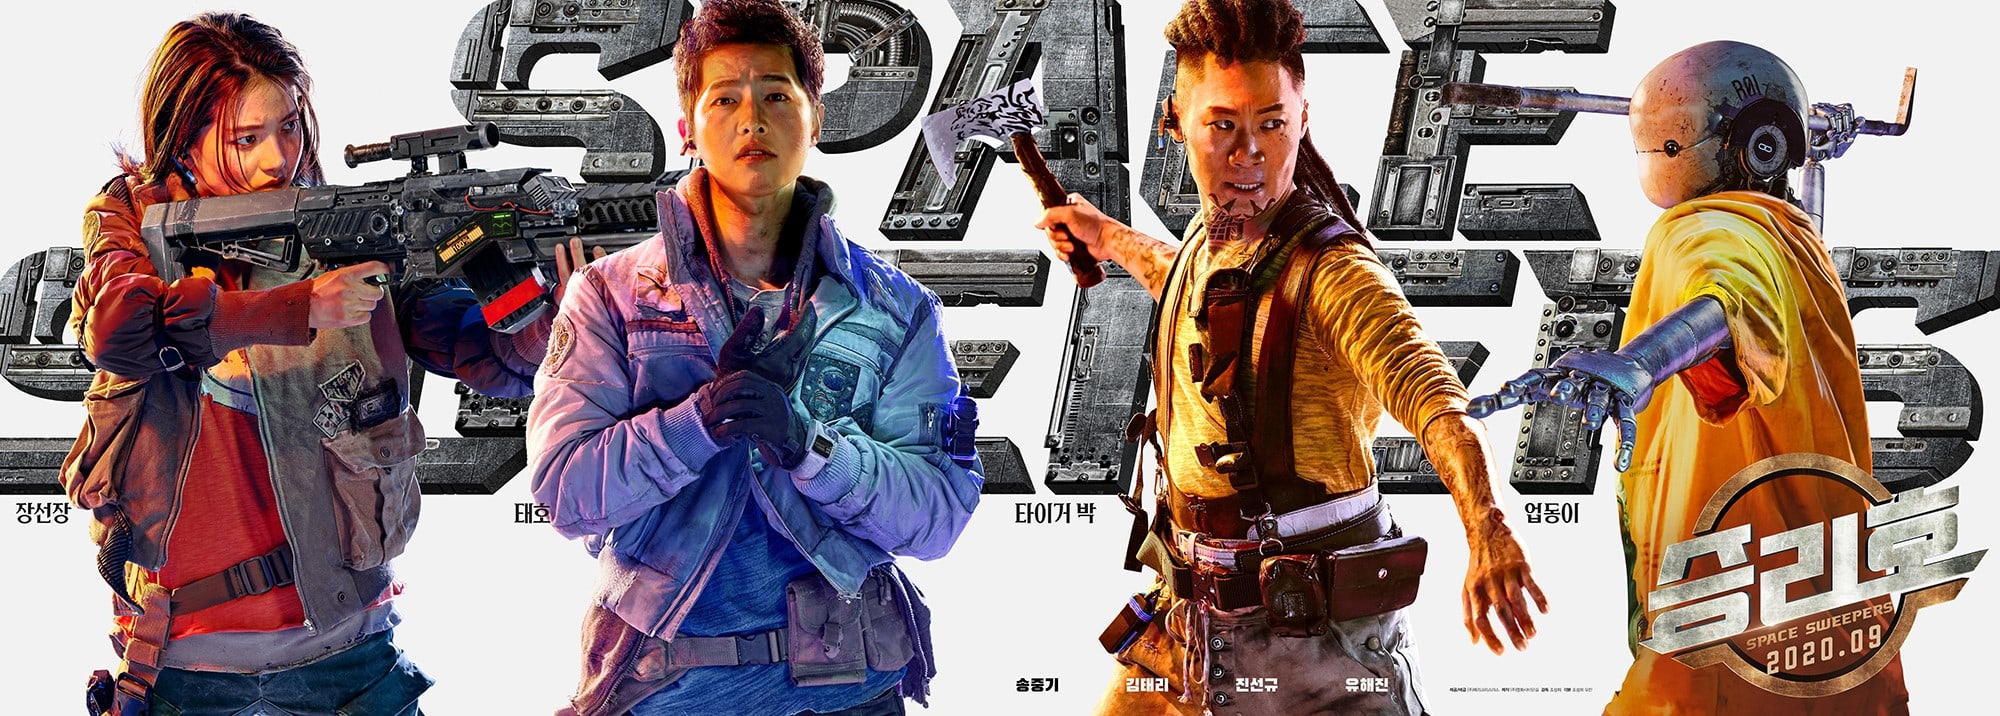 即将上映韩国科幻电影《胜利号》人物角色海报公开